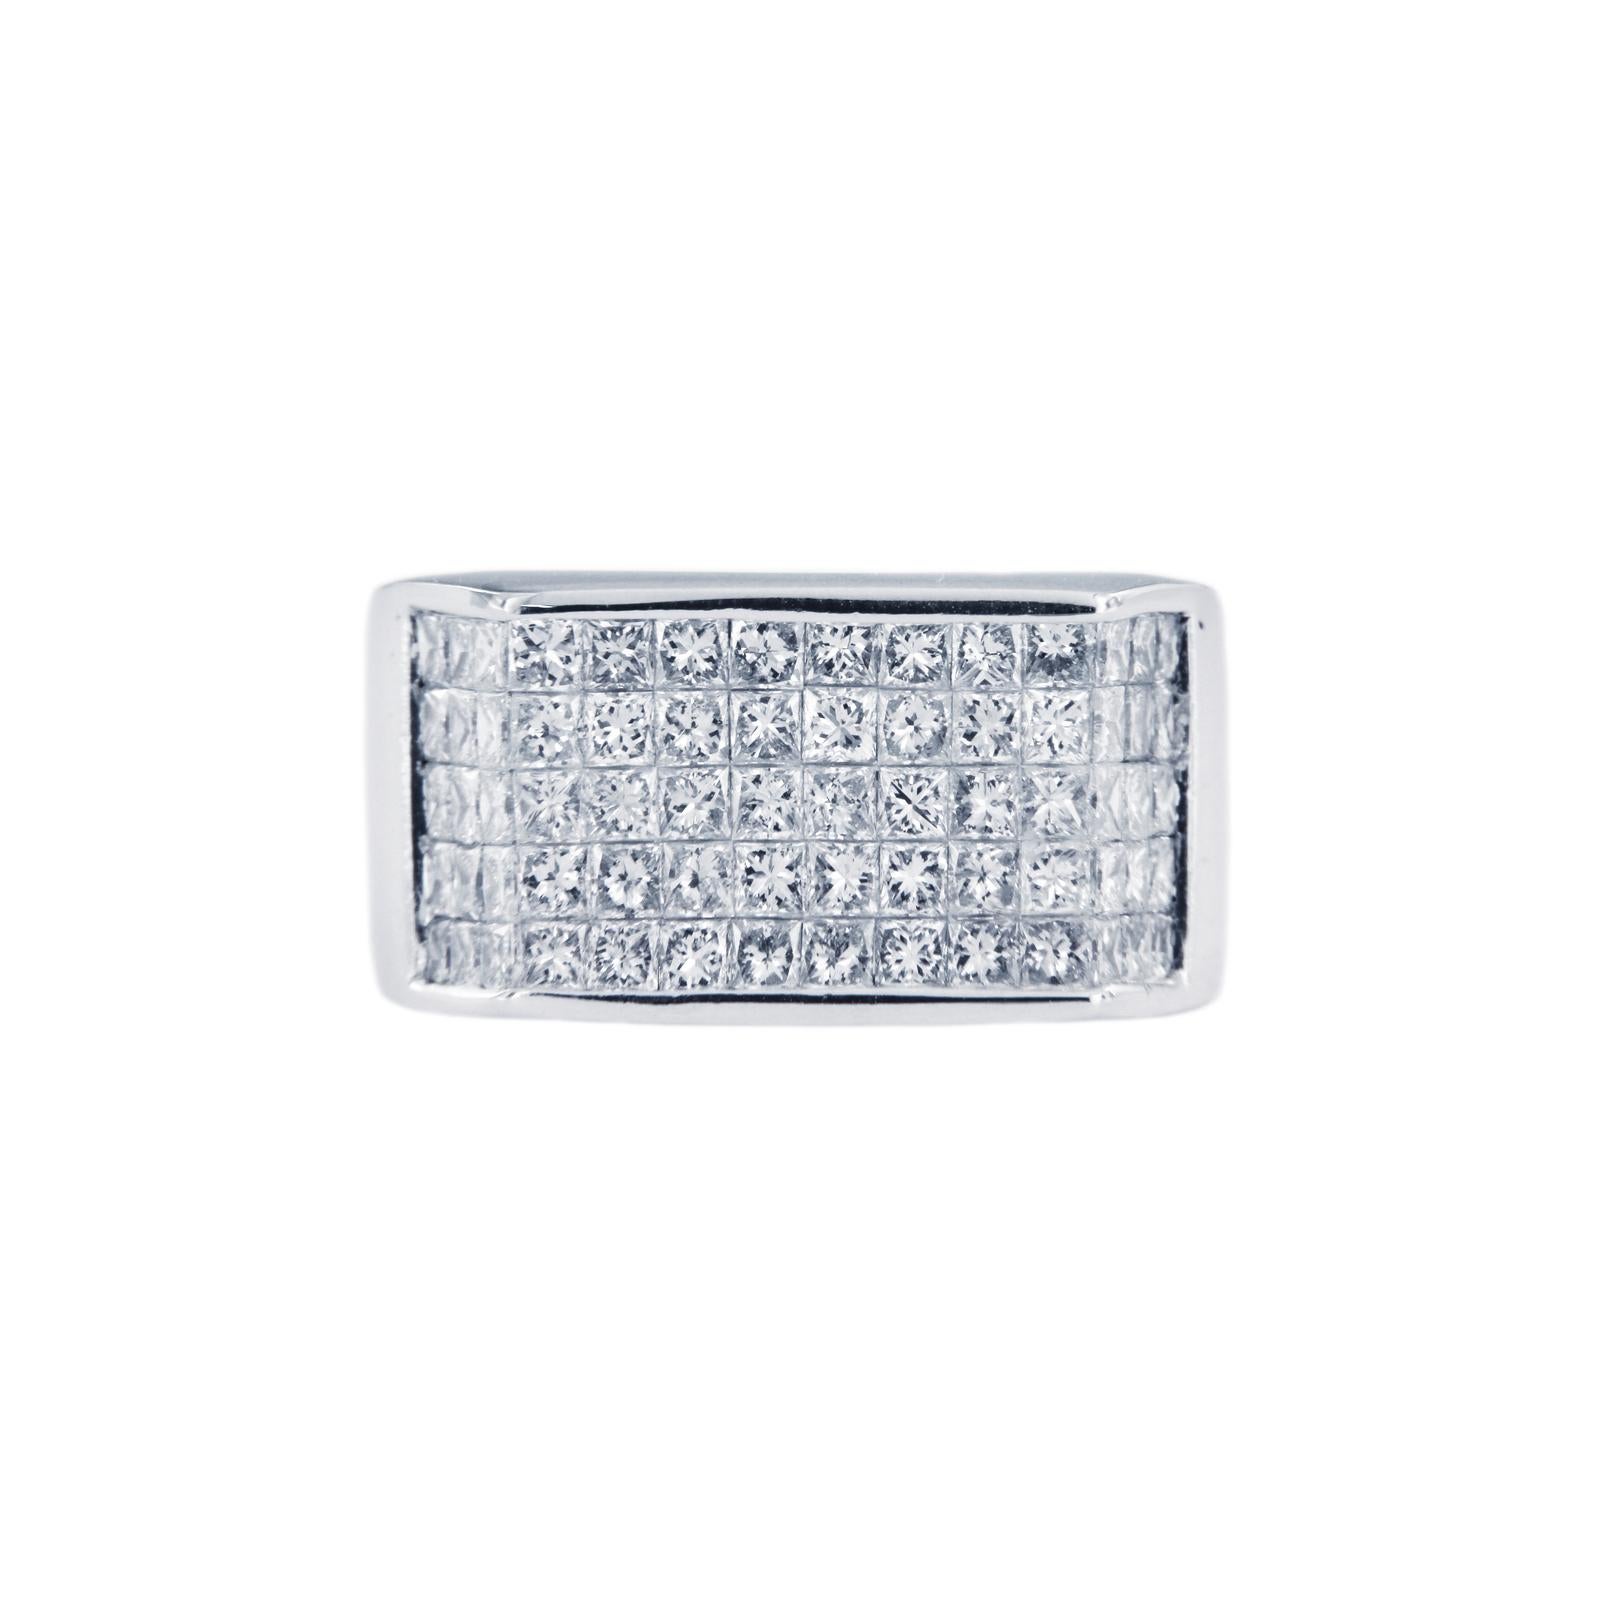 BAGUE DE PETIT DOIGT EN OR BLANC 14K AVEC DIAMANTS 2,5CT 

-Sur mesure
-Or blanc 14k
-Taille de l'anneau : 7
-Diamant : 2,5 ct, clarté VS, couleur G.
-Largeur : 11,6 mm

RETAIL : 5500